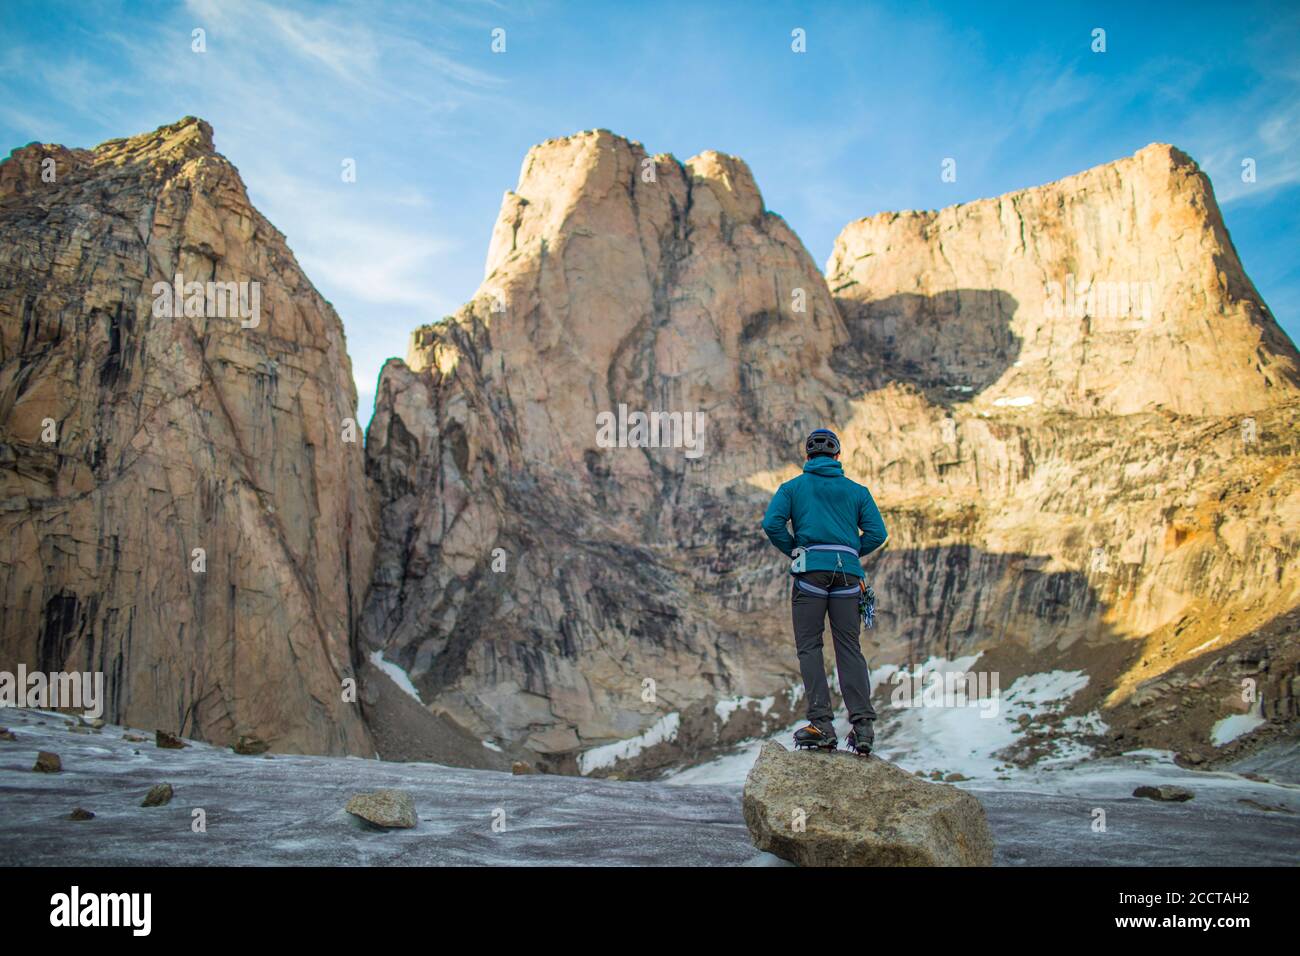 El escalador mira hacia la cima de una montaña antes de escalar. Foto de stock